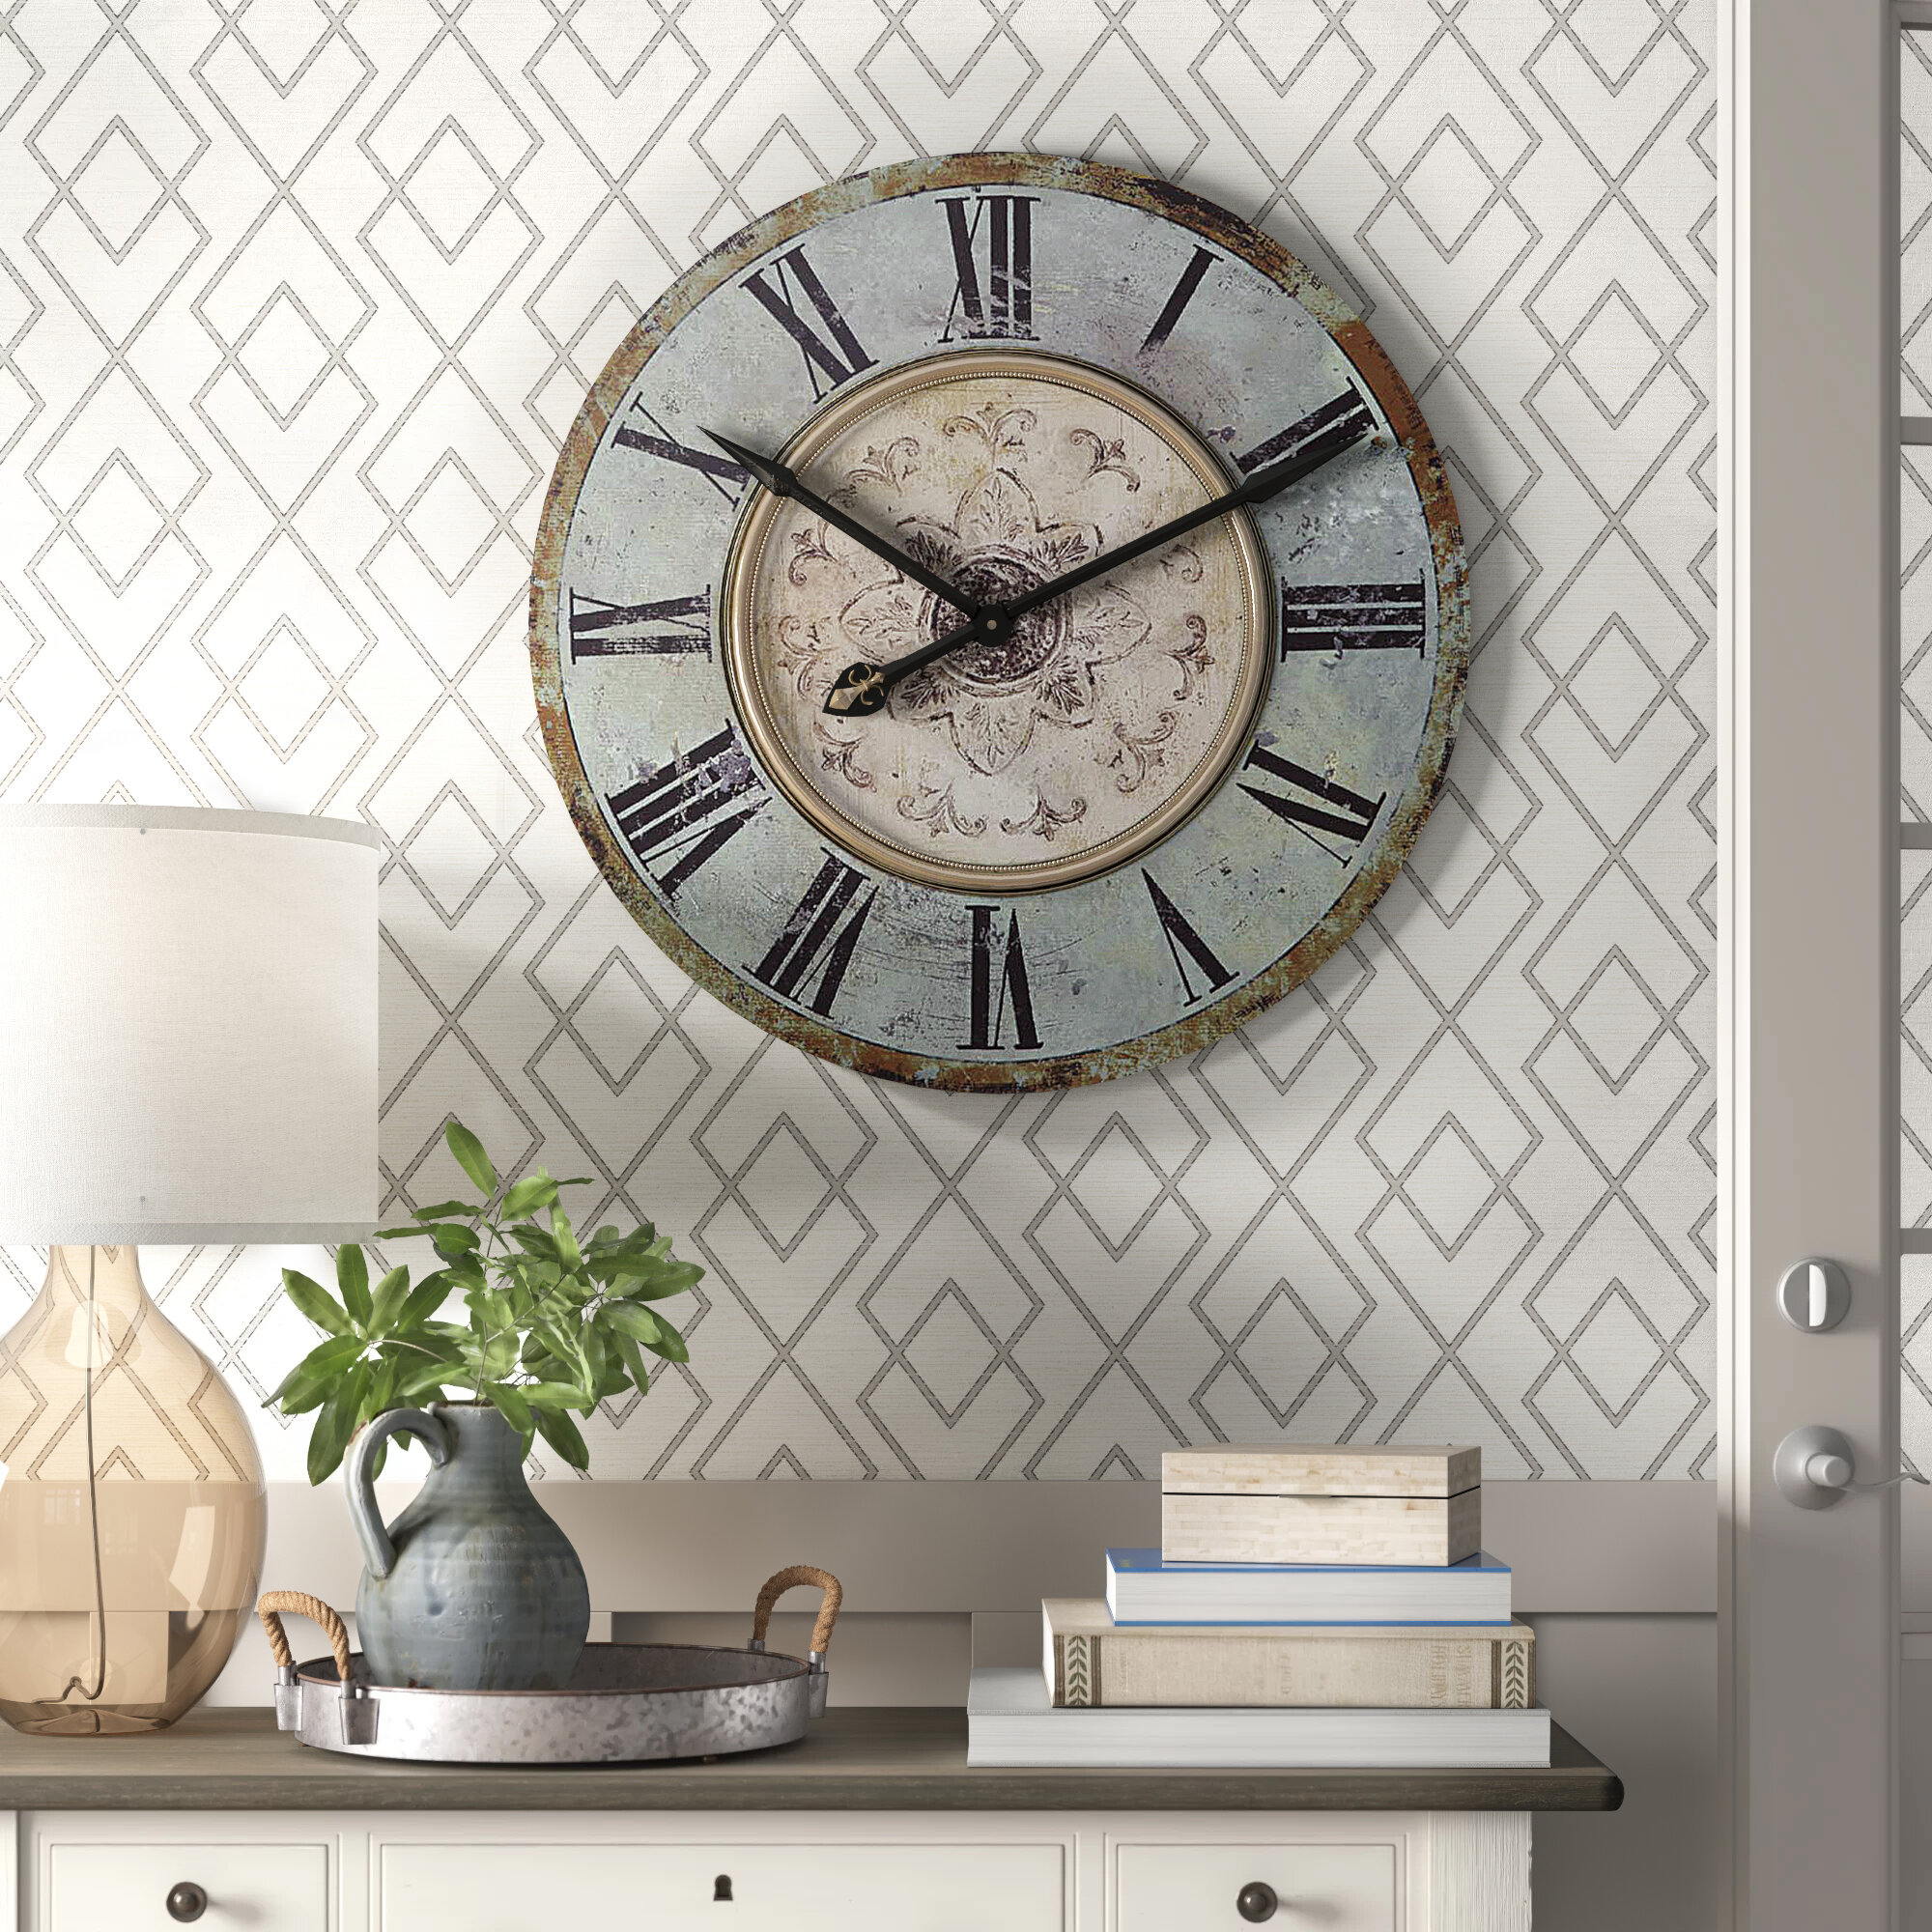 10 Wall Clock Decoration Ideas With Photos Wayfair